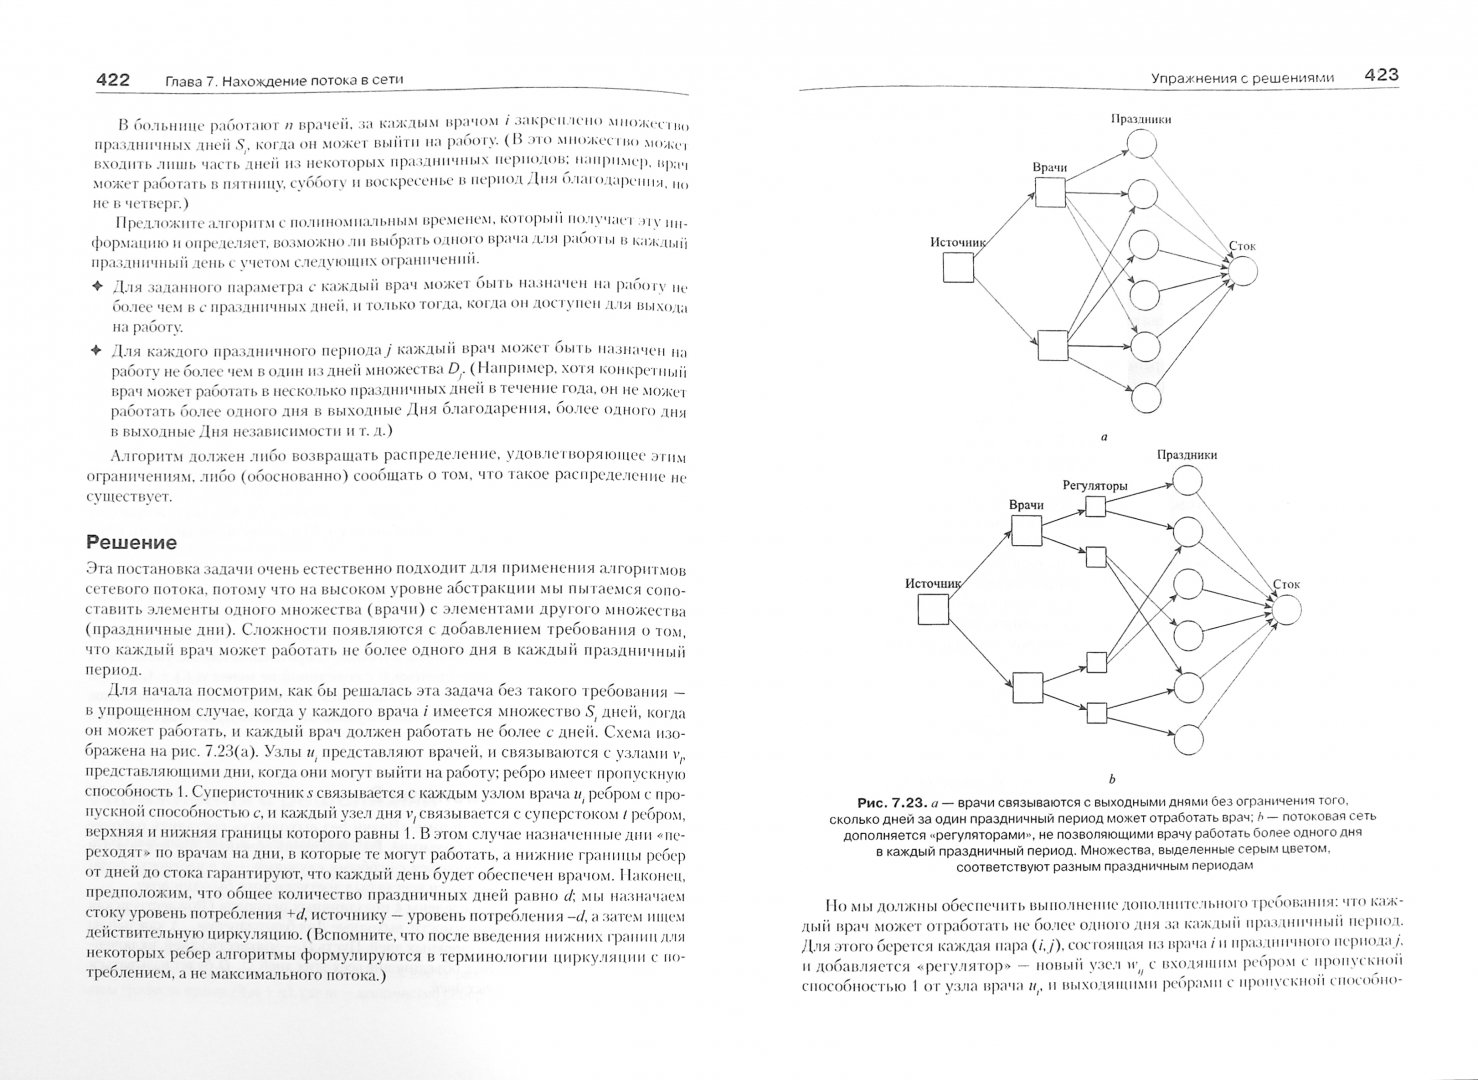 Иллюстрация 1 из 22 для Алгоритмы: разработка и применение - Клейнберг, Тардос | Лабиринт - книги. Источник: Лабиринт